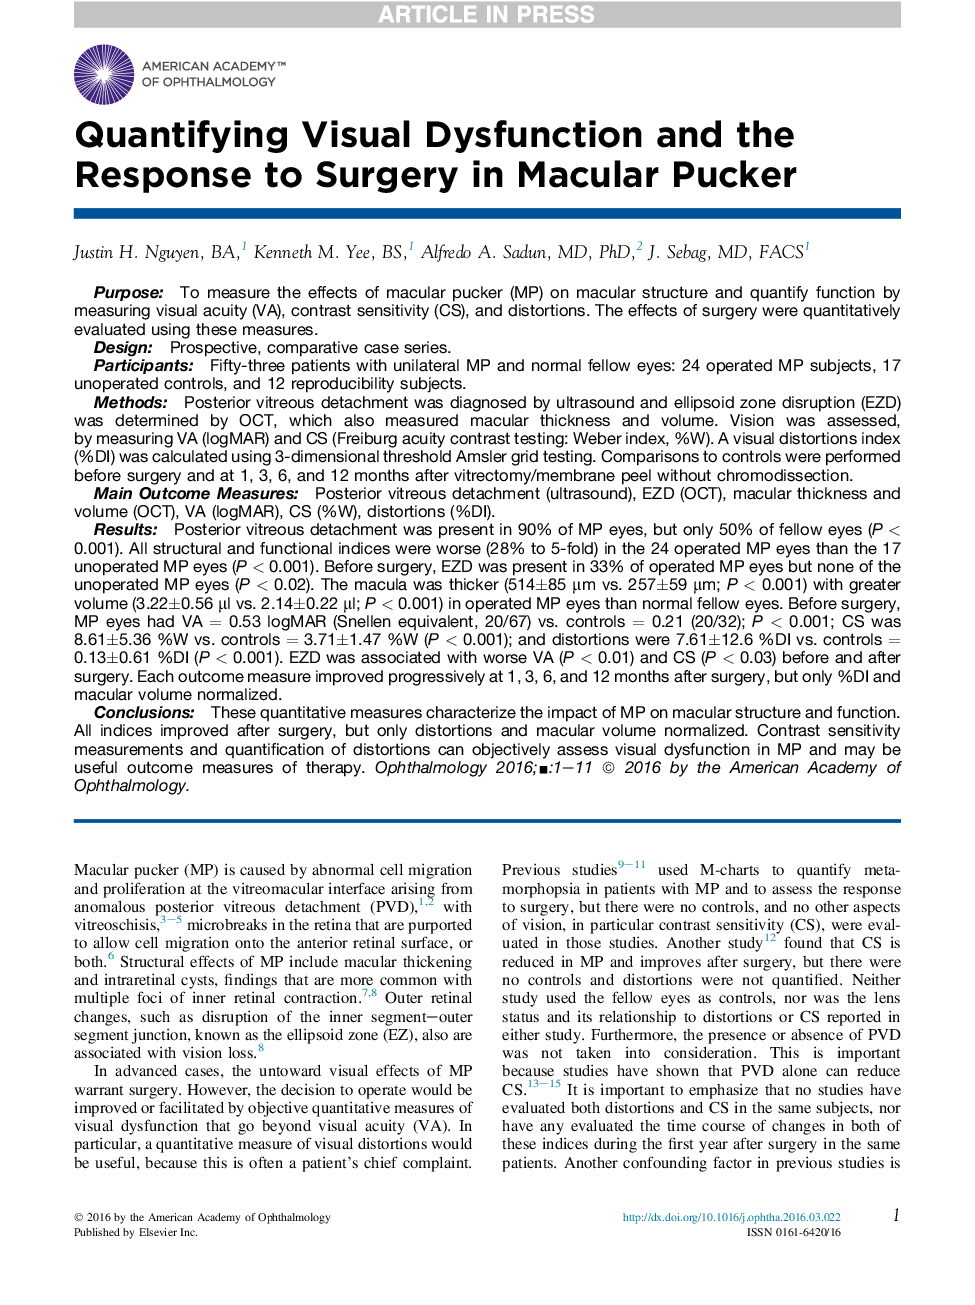 کمبود اختلال بصری و پاسخ به جراحی در پیکر ماکولار 